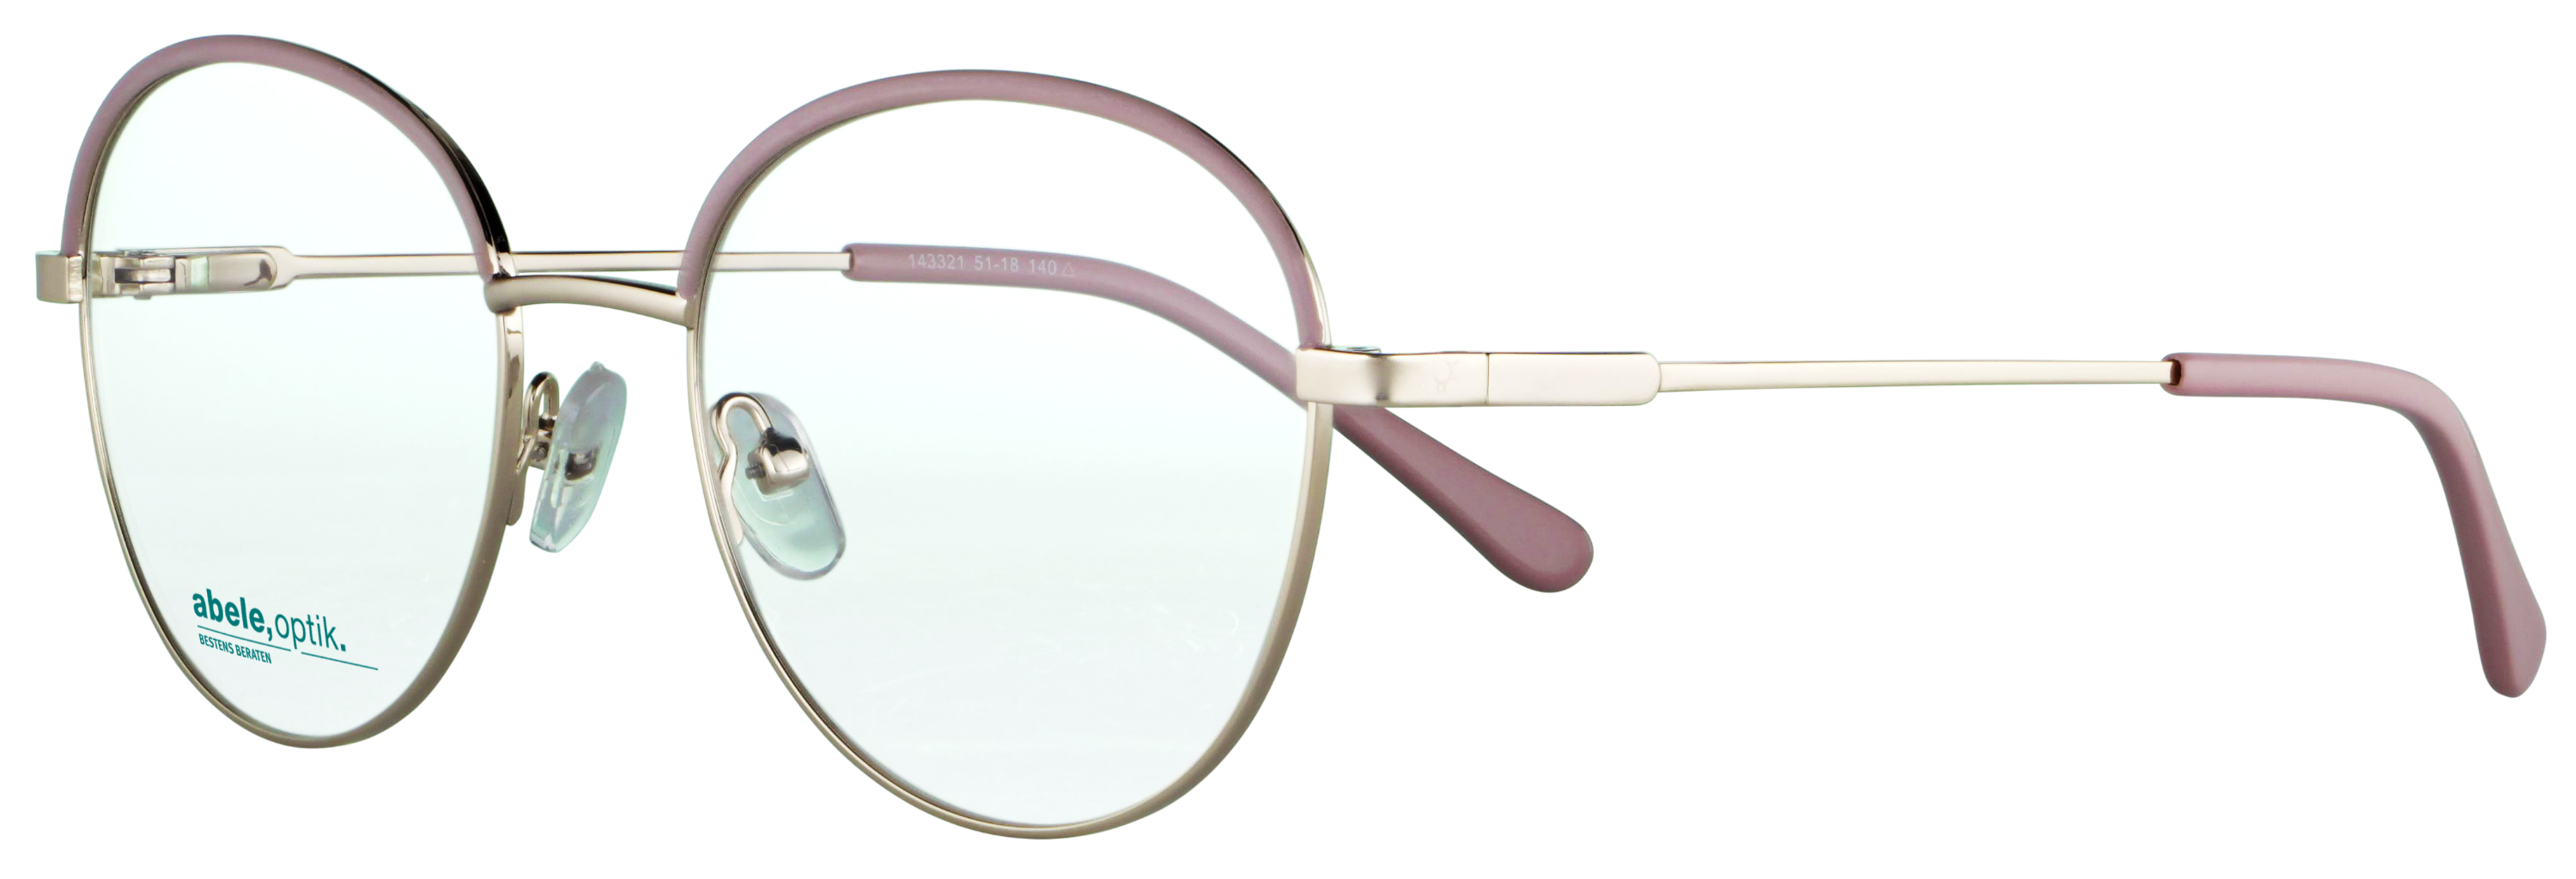 Das Bild zeigt die Korrektionsbrille 143321 von der Marke Abele Optik in rosa - gold.